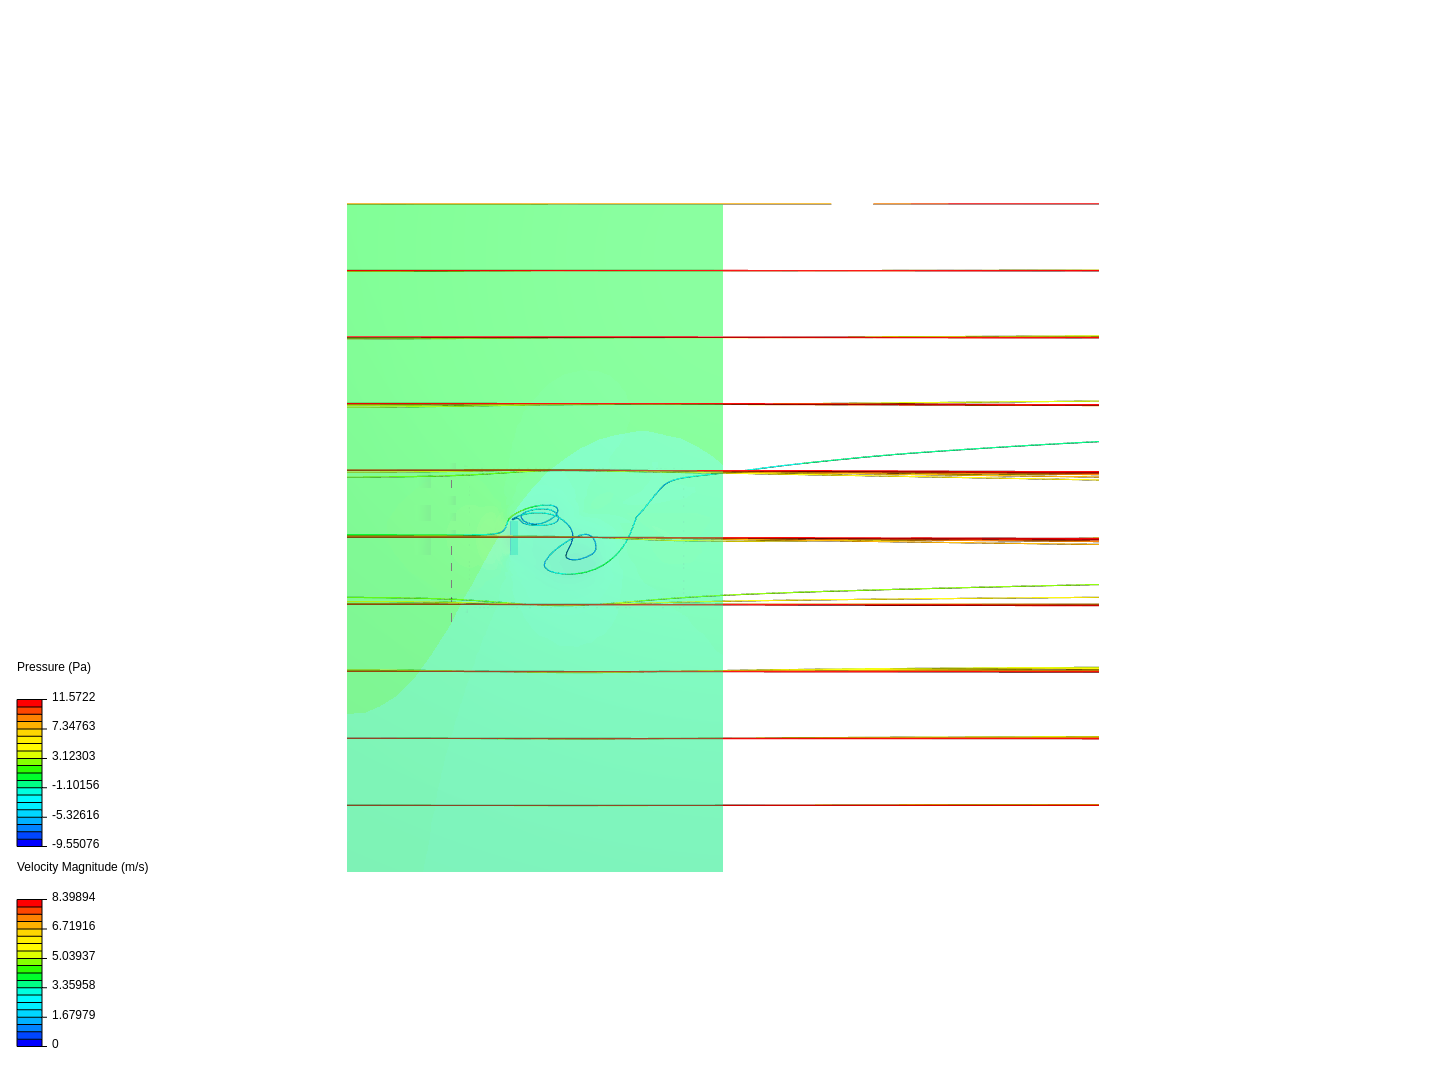 Isolated Building  Aerodynamic Analysis image